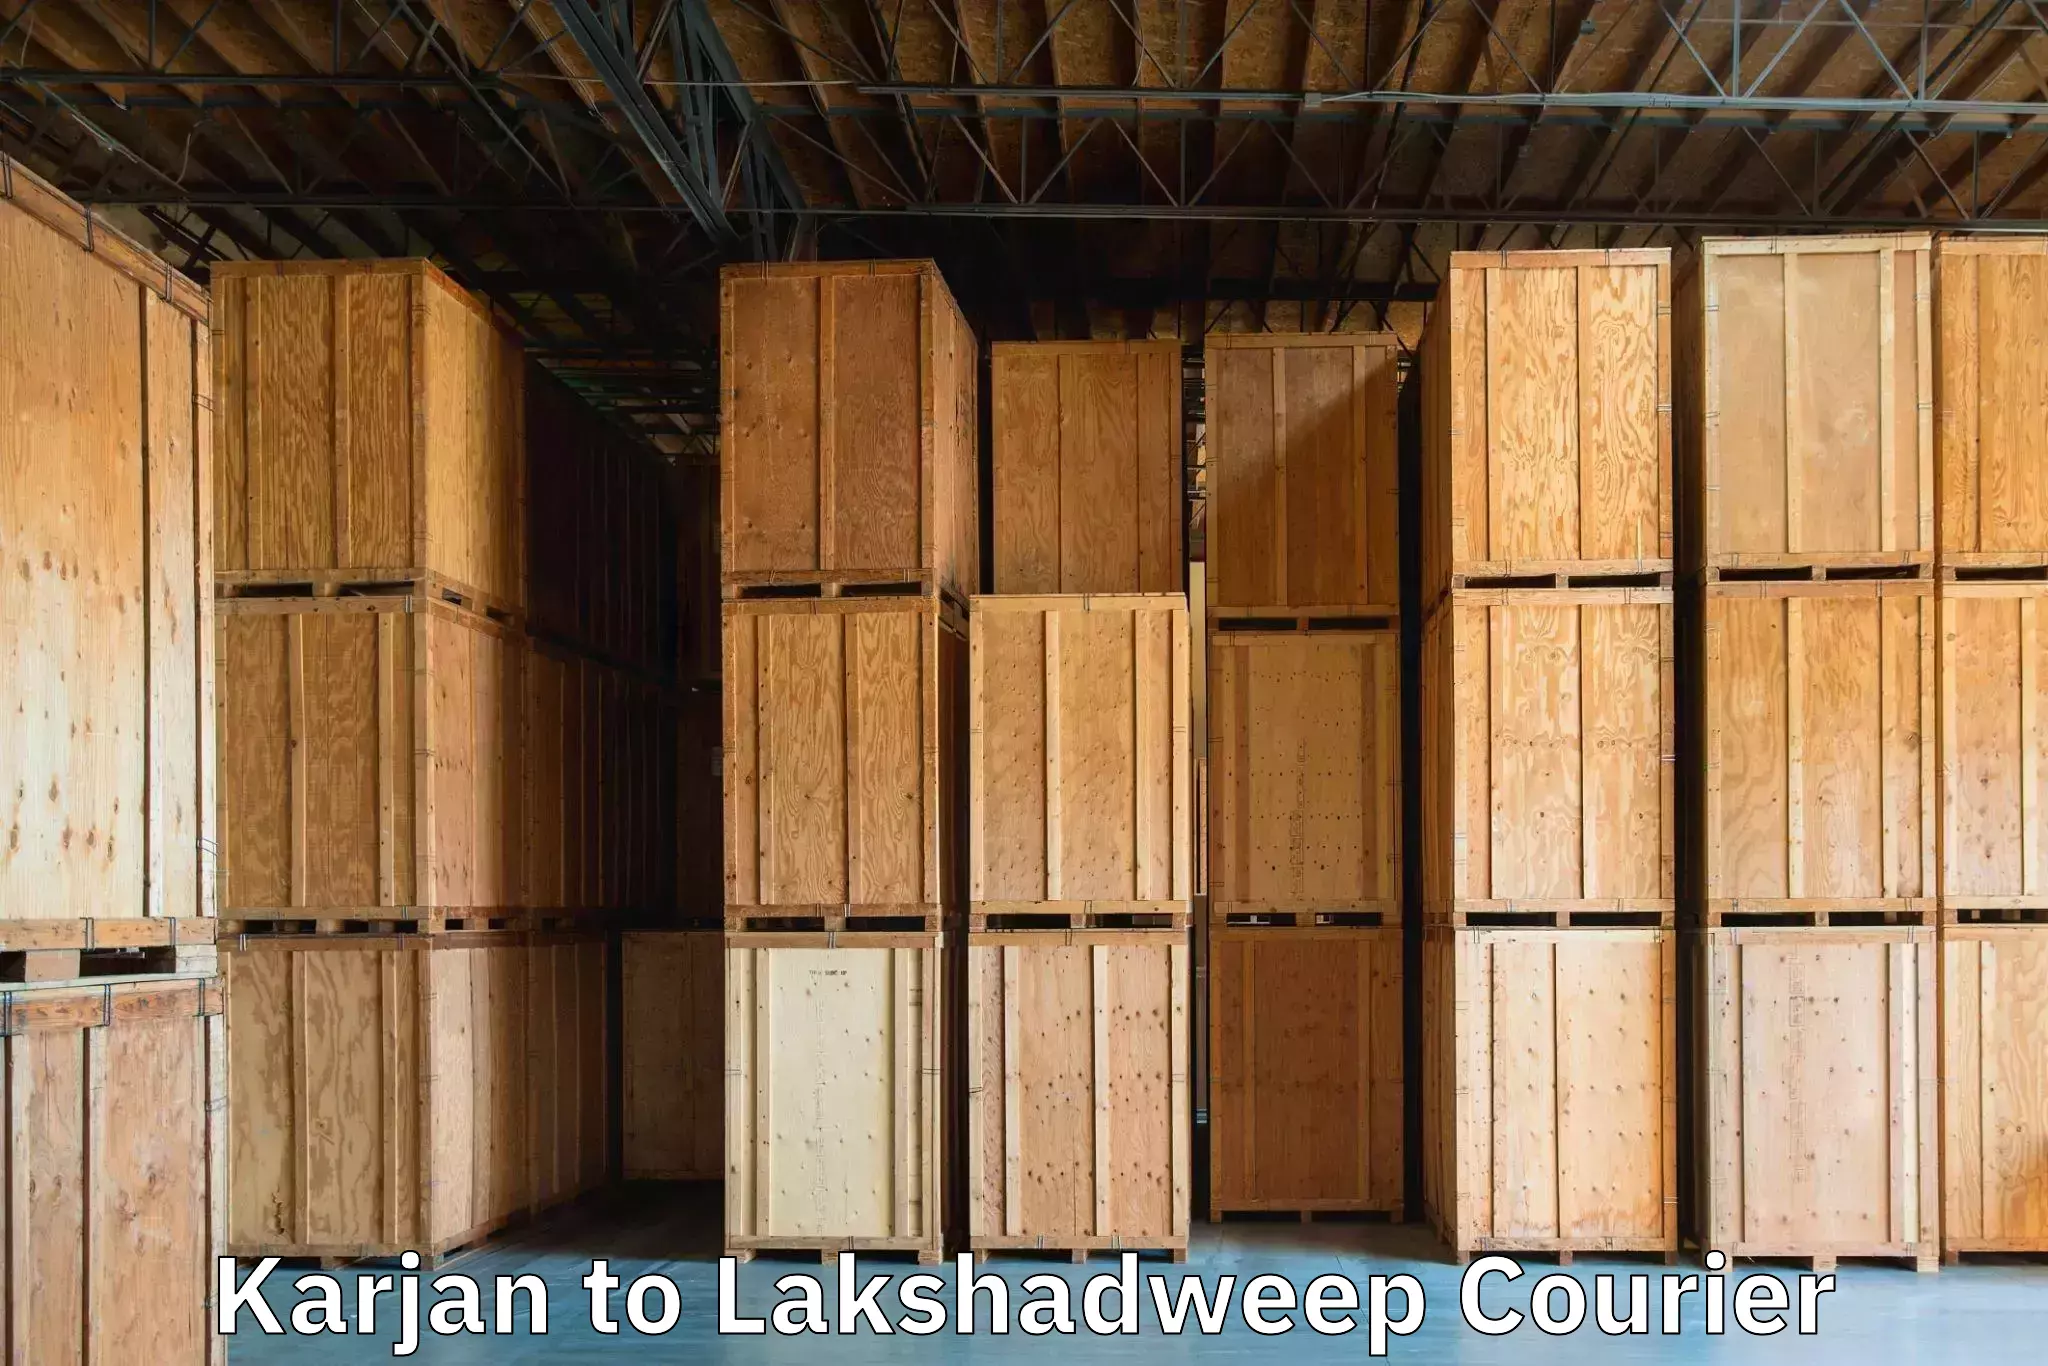 Luggage delivery system Karjan to Lakshadweep